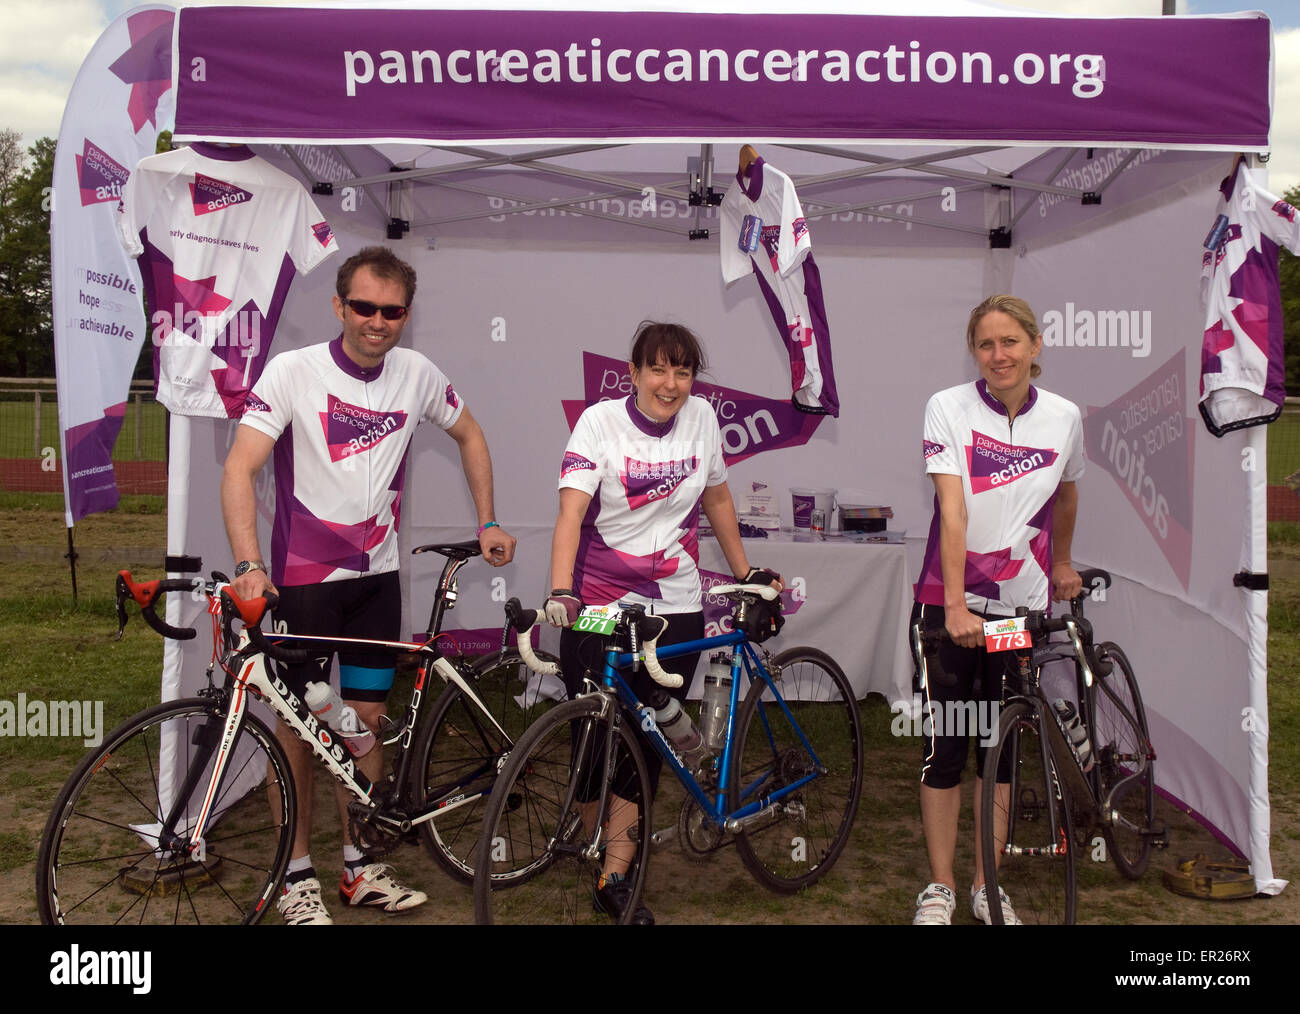 3 ciclisti che mostra il loro supporto per azione pancreatico su una carità in bicicletta, Haslemere, Surrey, Regno Unito. Foto Stock